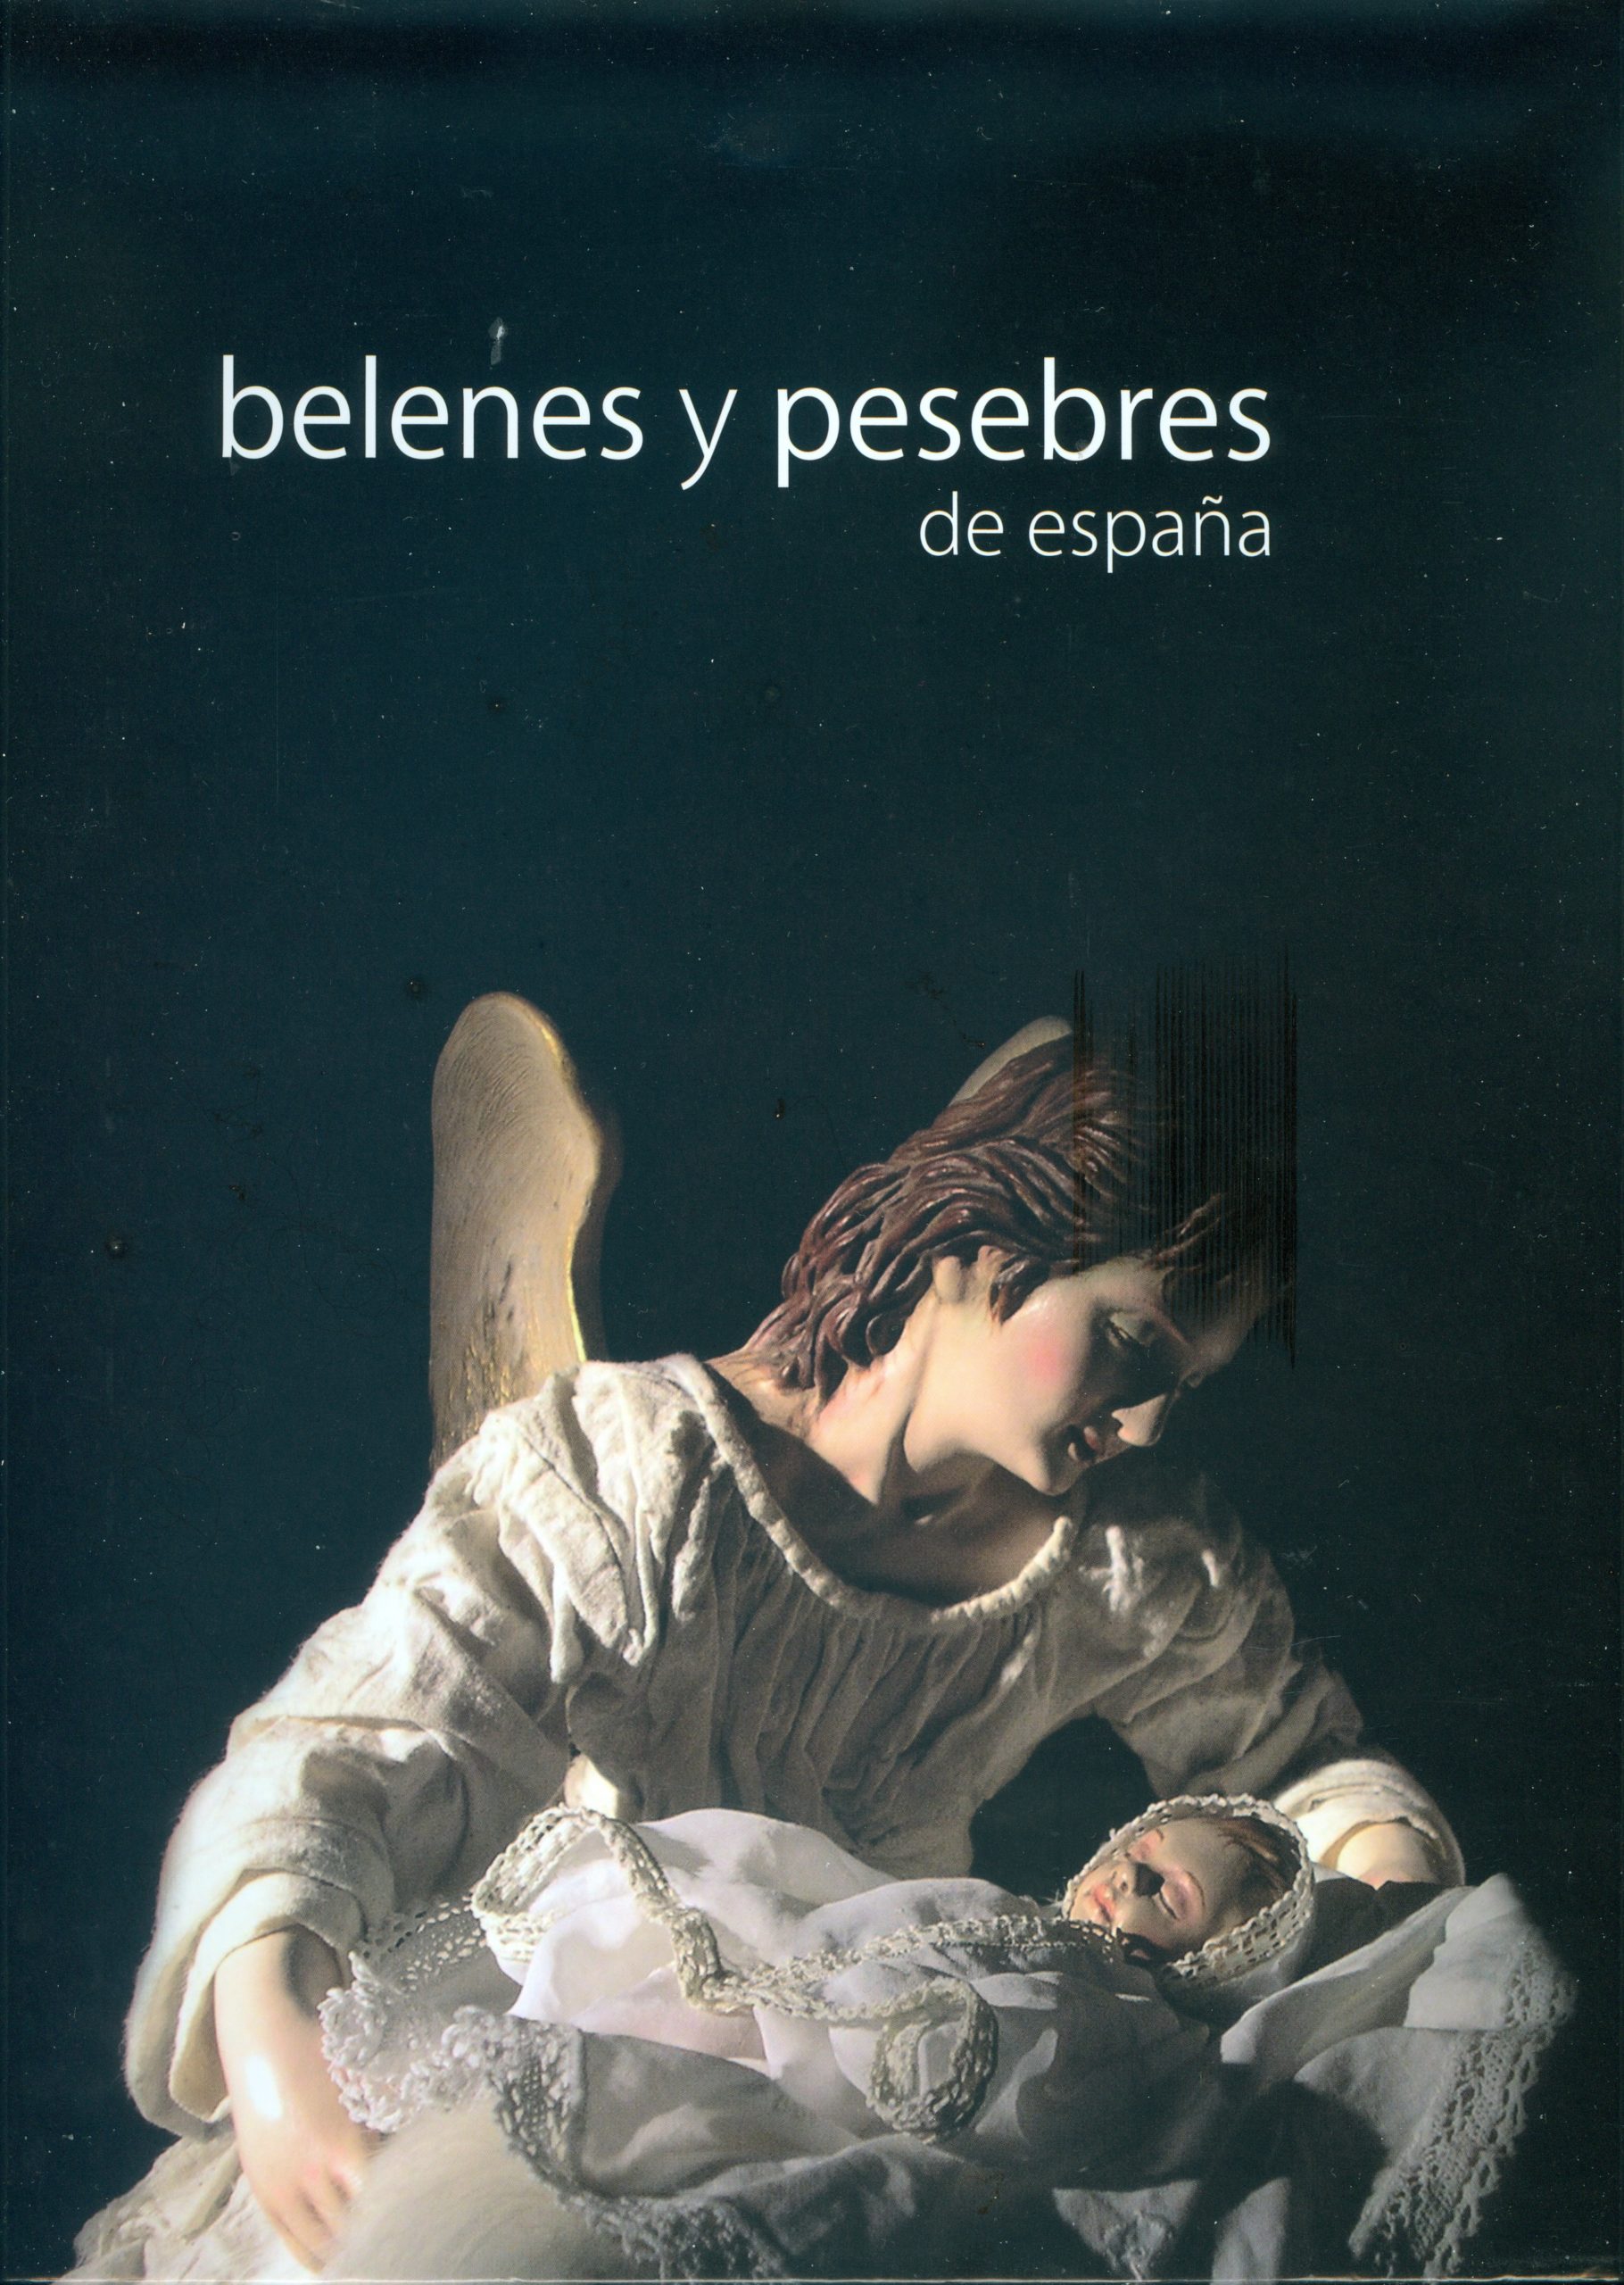 Portada del libro "Belenes y Pesebres de España" coordinado por Augusto Beltrá Jover, editado por la Federación Española de Belenistas (2009)